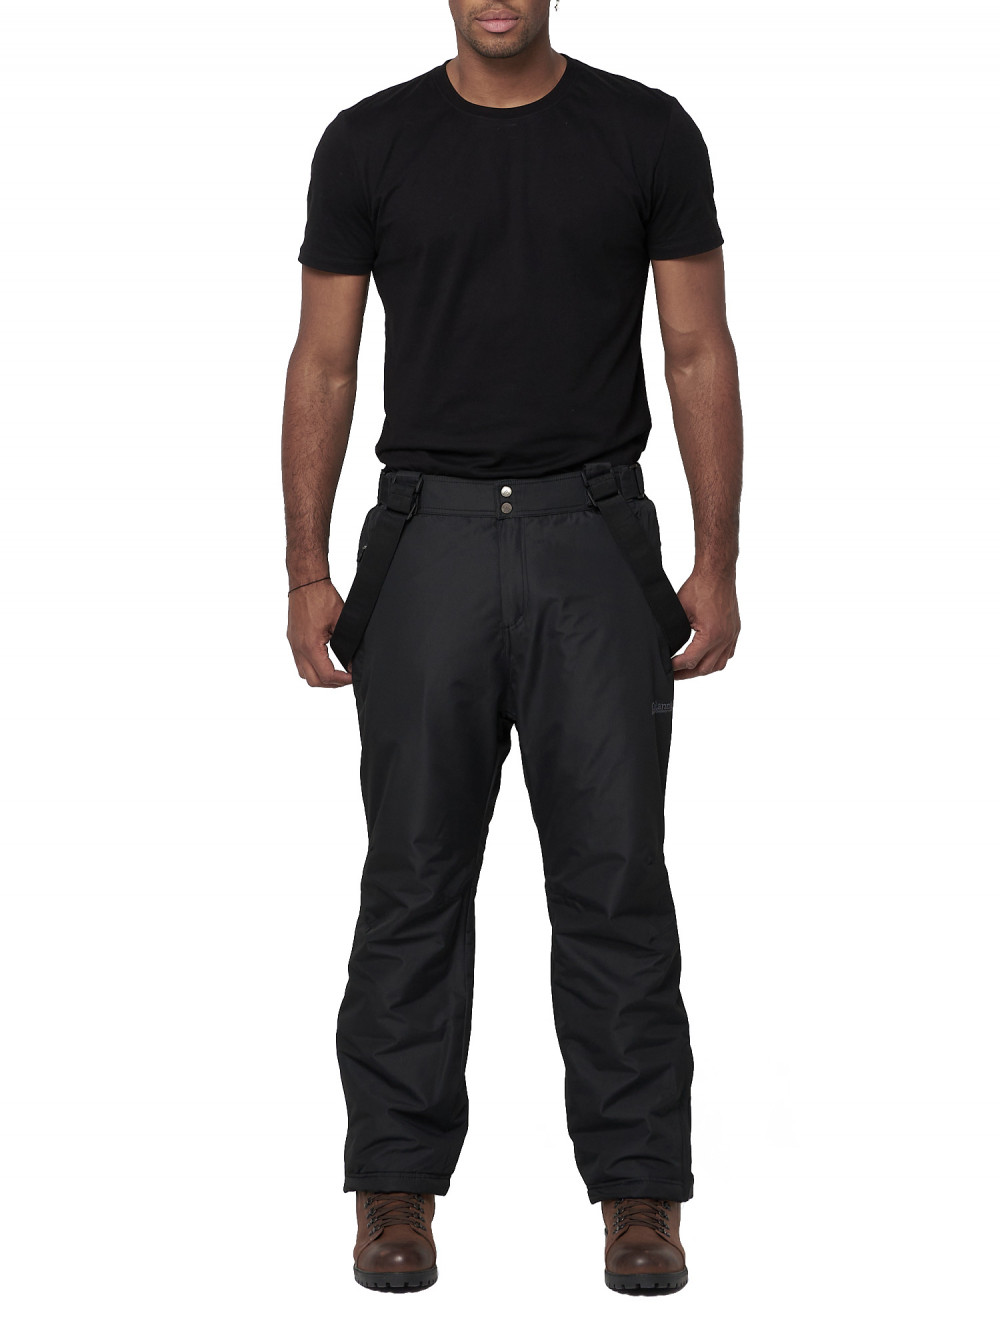 Полукомбинезон брюки горнолыжные мужские AD66414Ch черного цвета, 58